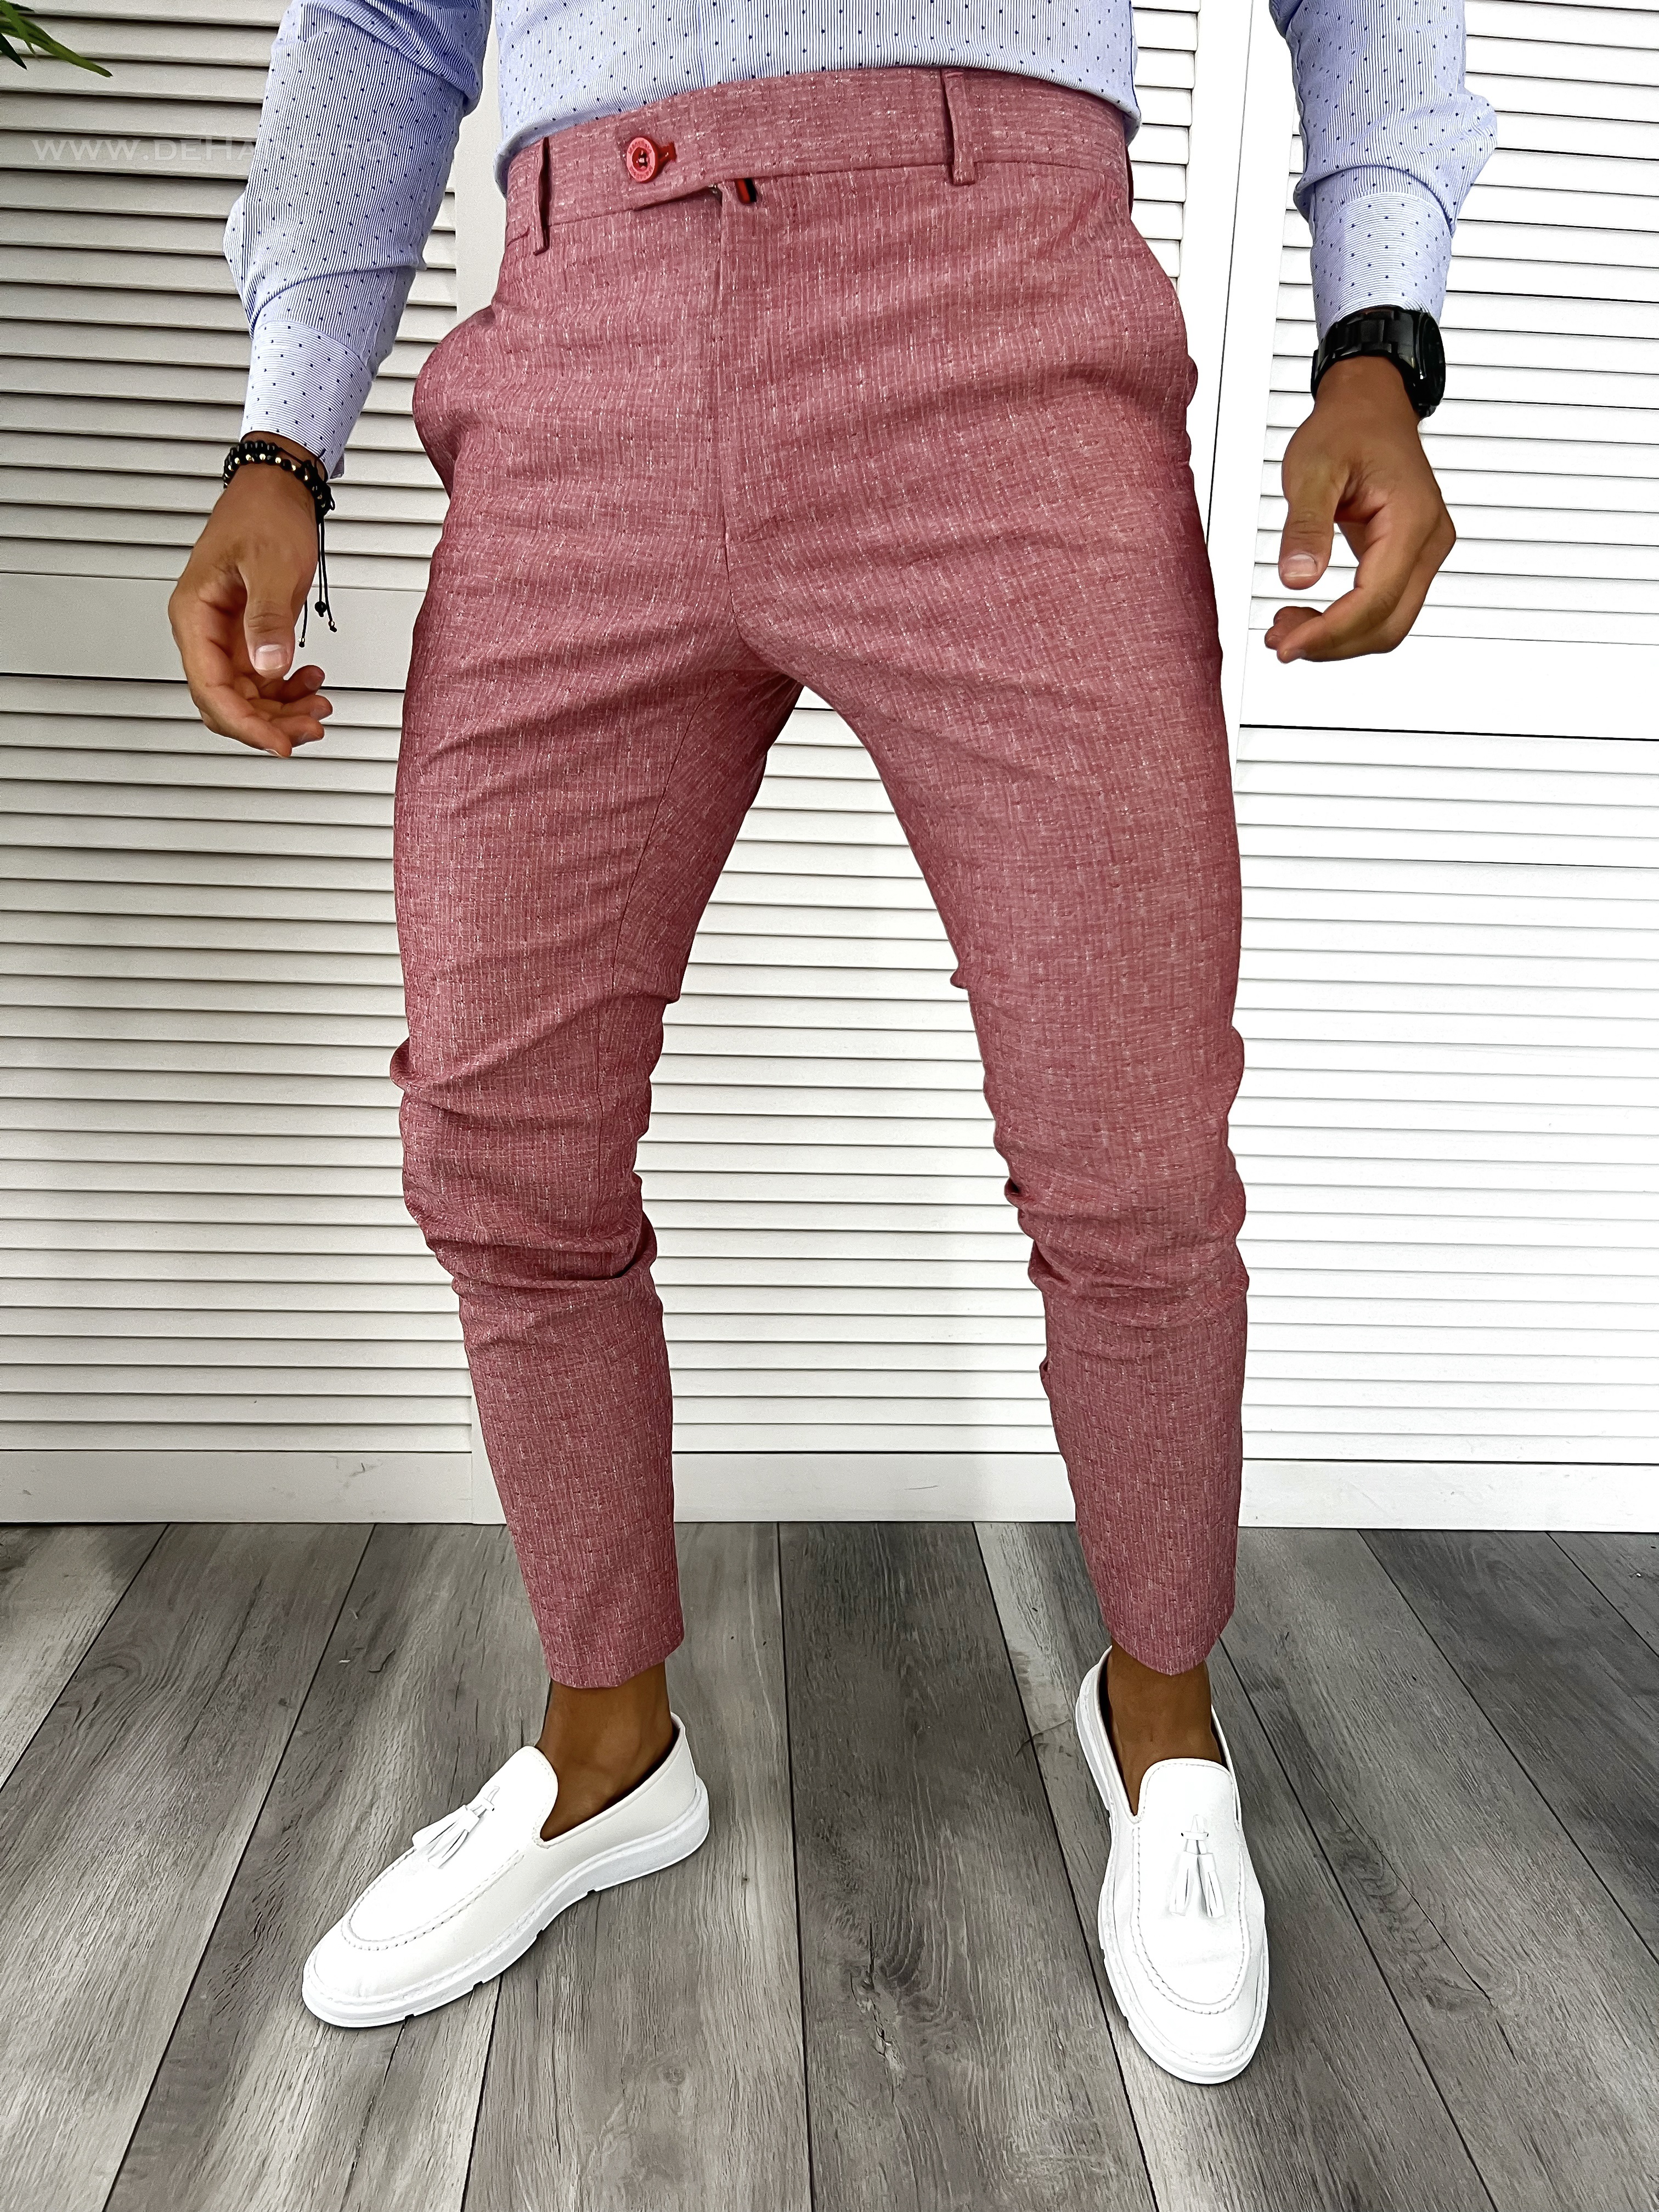 Pantaloni barbati eleganti roz B8812 O3-1.1